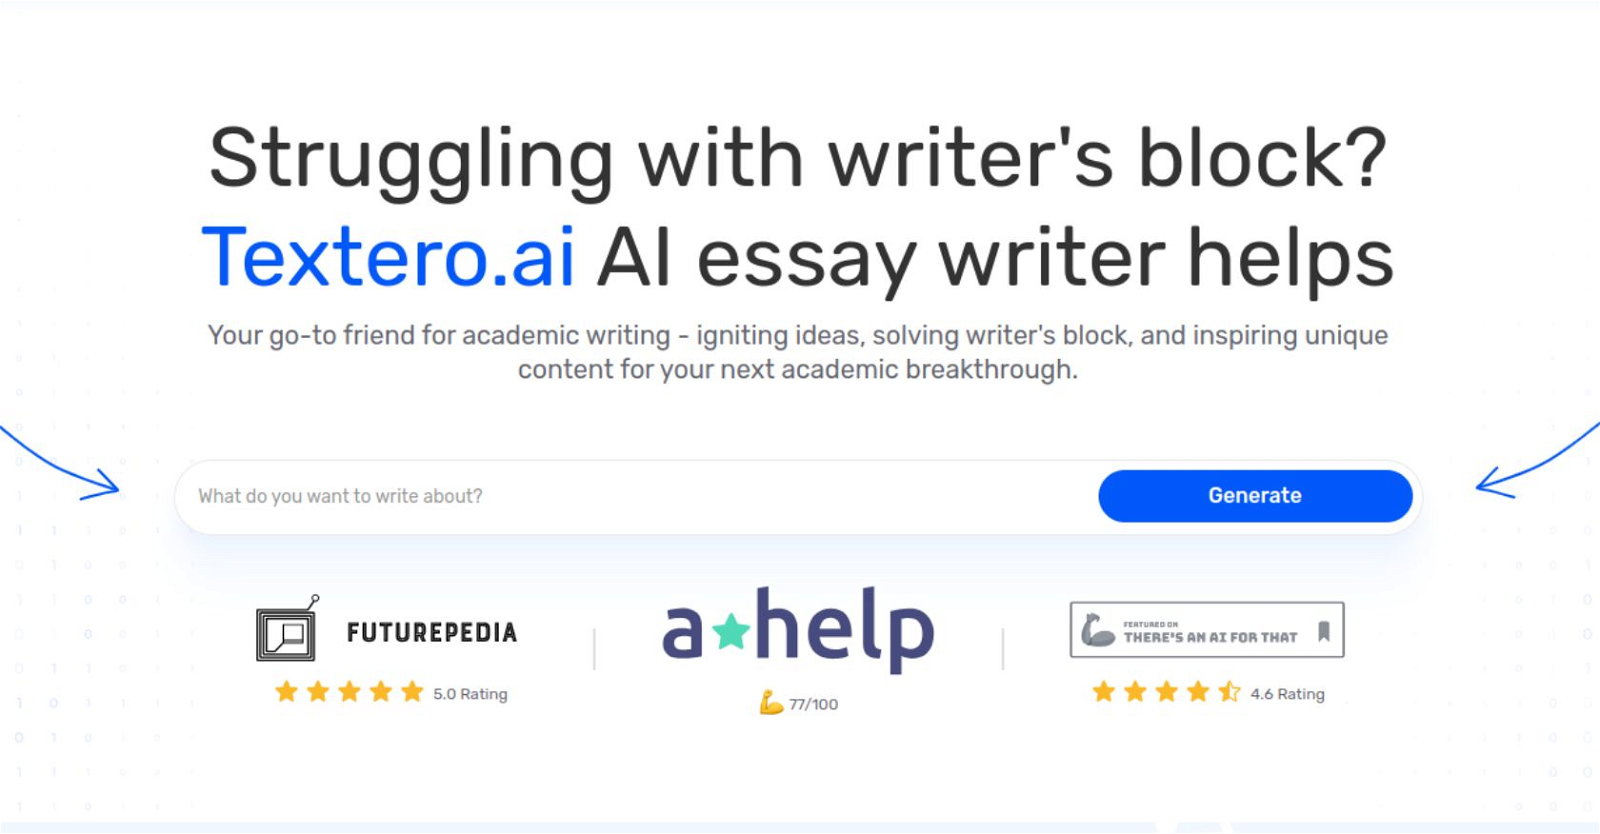 Textero.ai AI Essay Writer